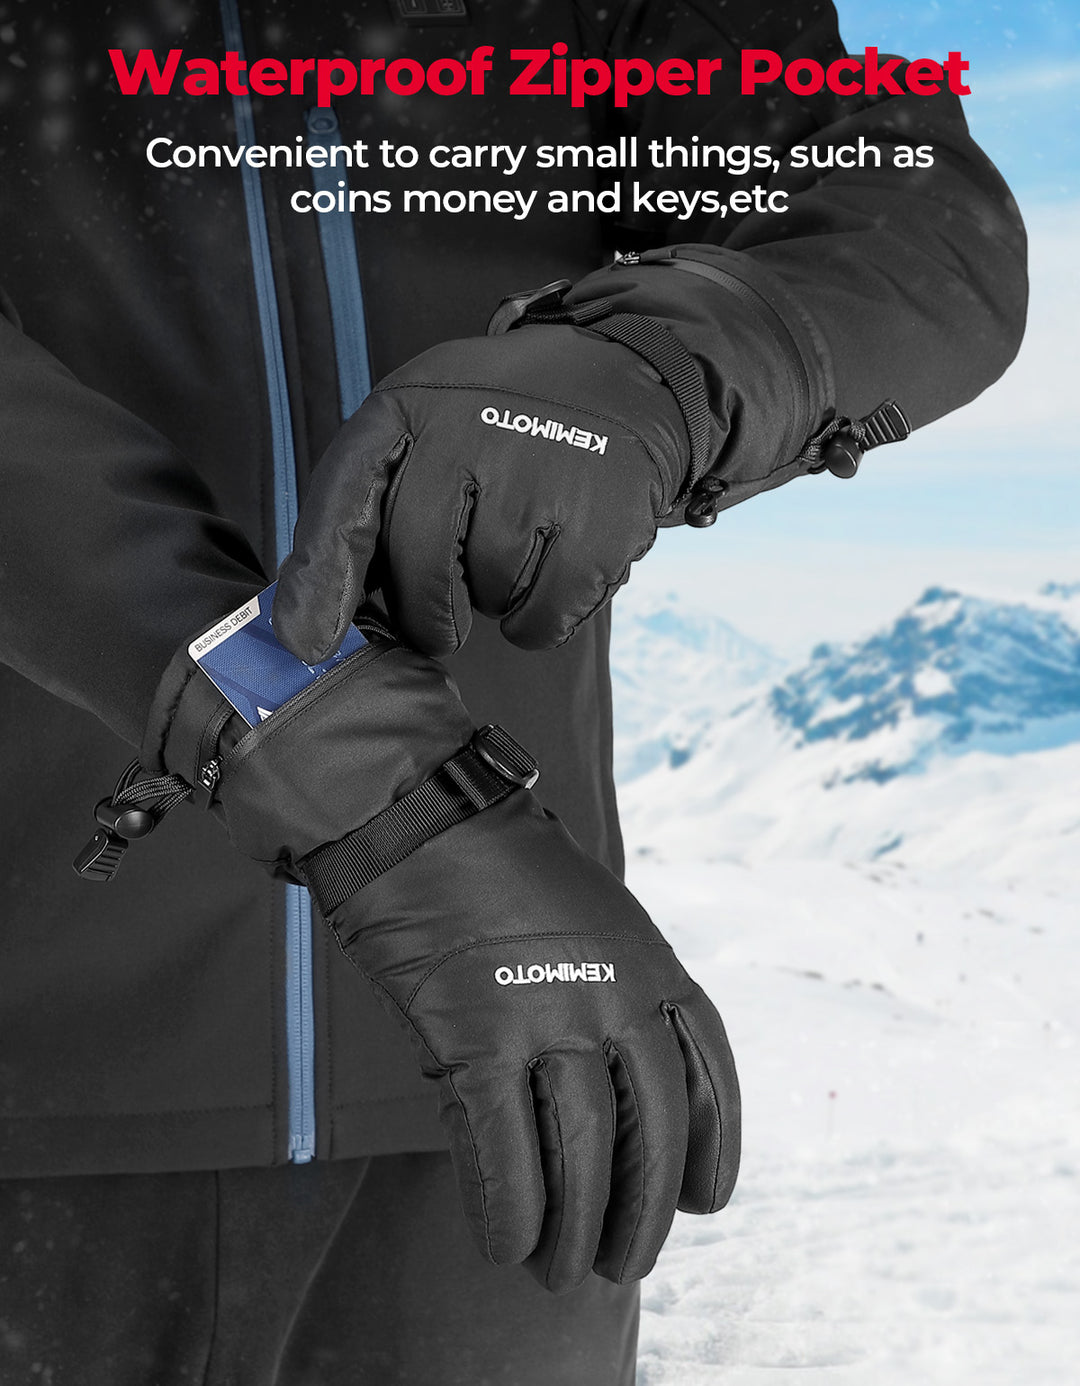 Ski Gloves Winter Gloves for Men Waterproof - Kemimoto